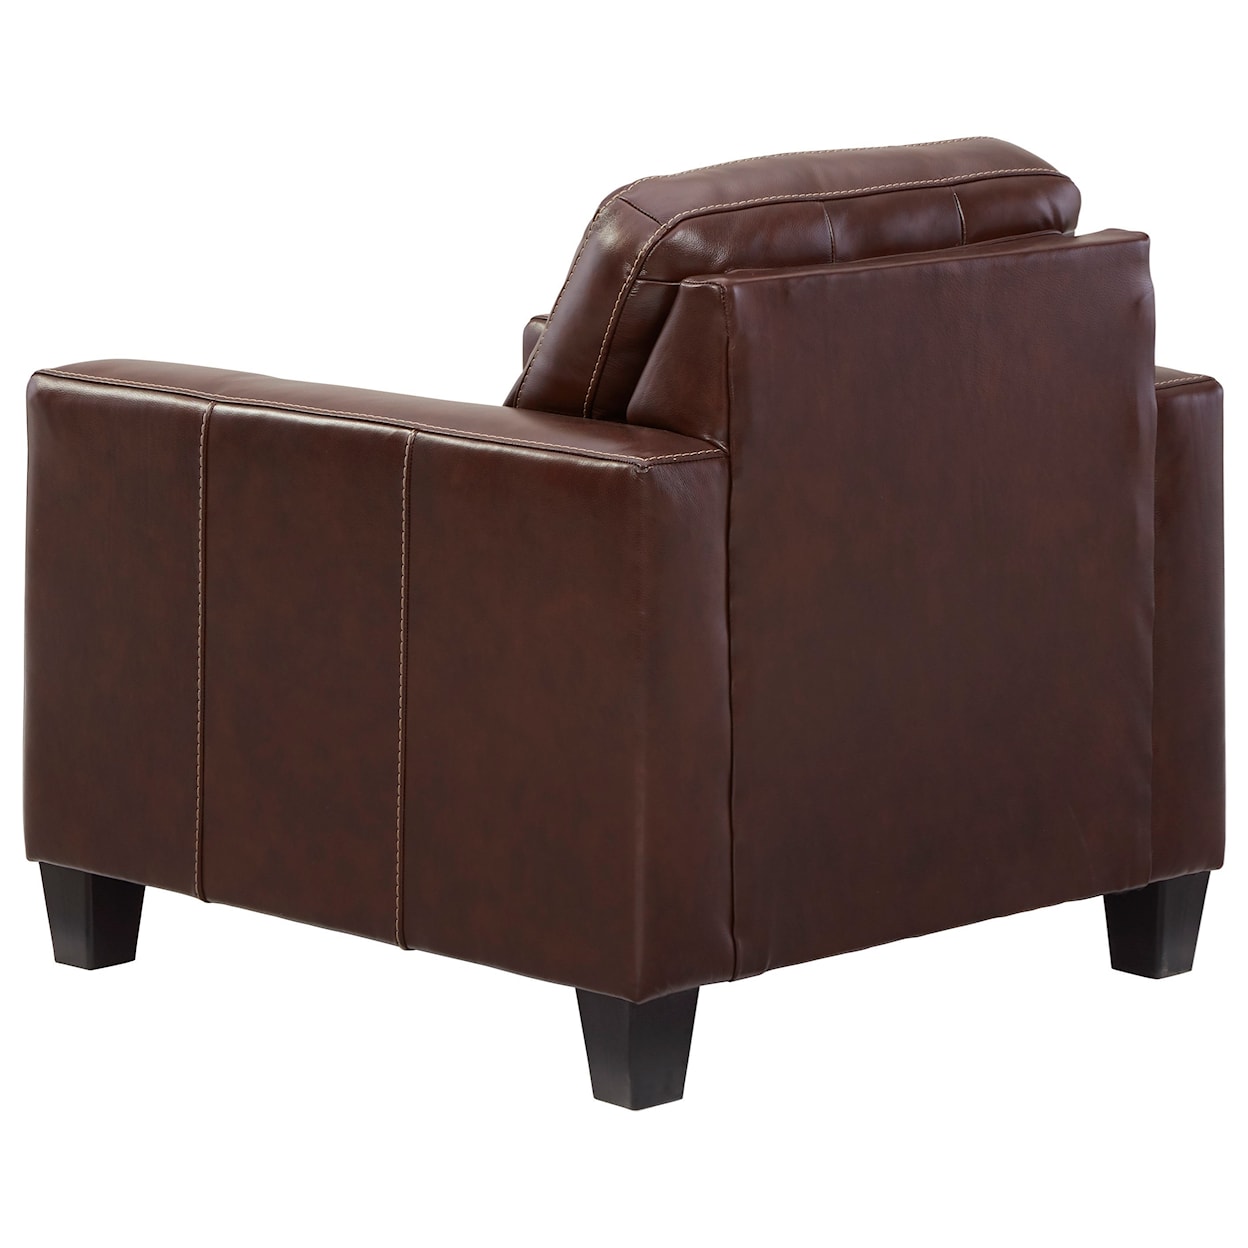 Ashley Furniture Signature Design Altonbury Chair